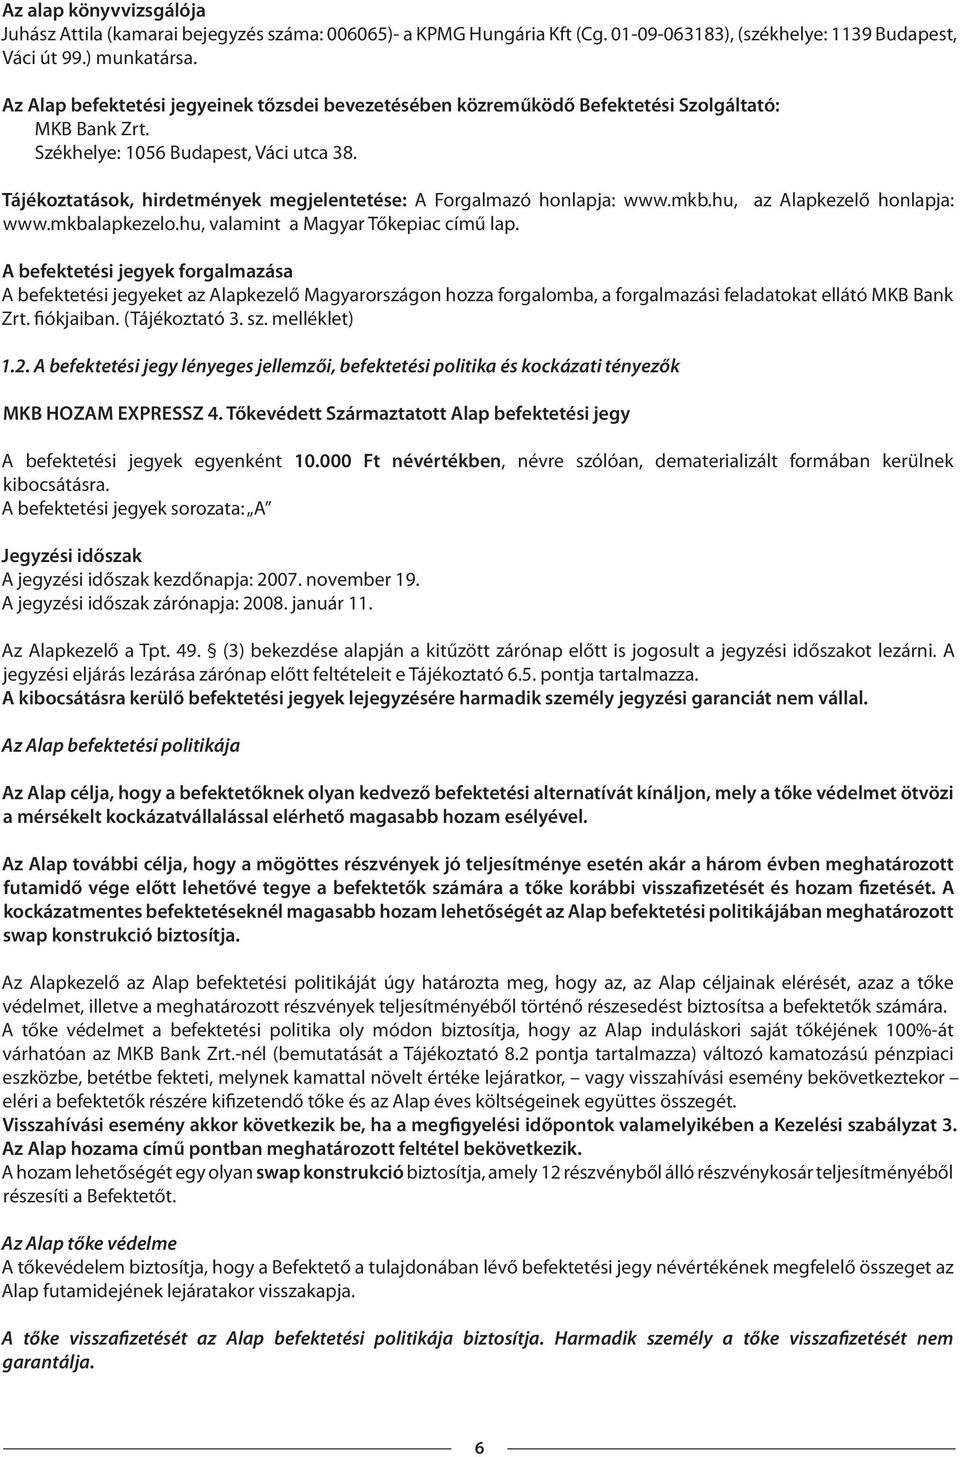 Tájékoztatások, hirdetmények megjelentetése: A Forgalmazó honlapja: www.mkb.hu, az Alapkezelő honlapja: www.mkbalapkezelo.hu, valamint a Magyar Tőkepiac című lap.